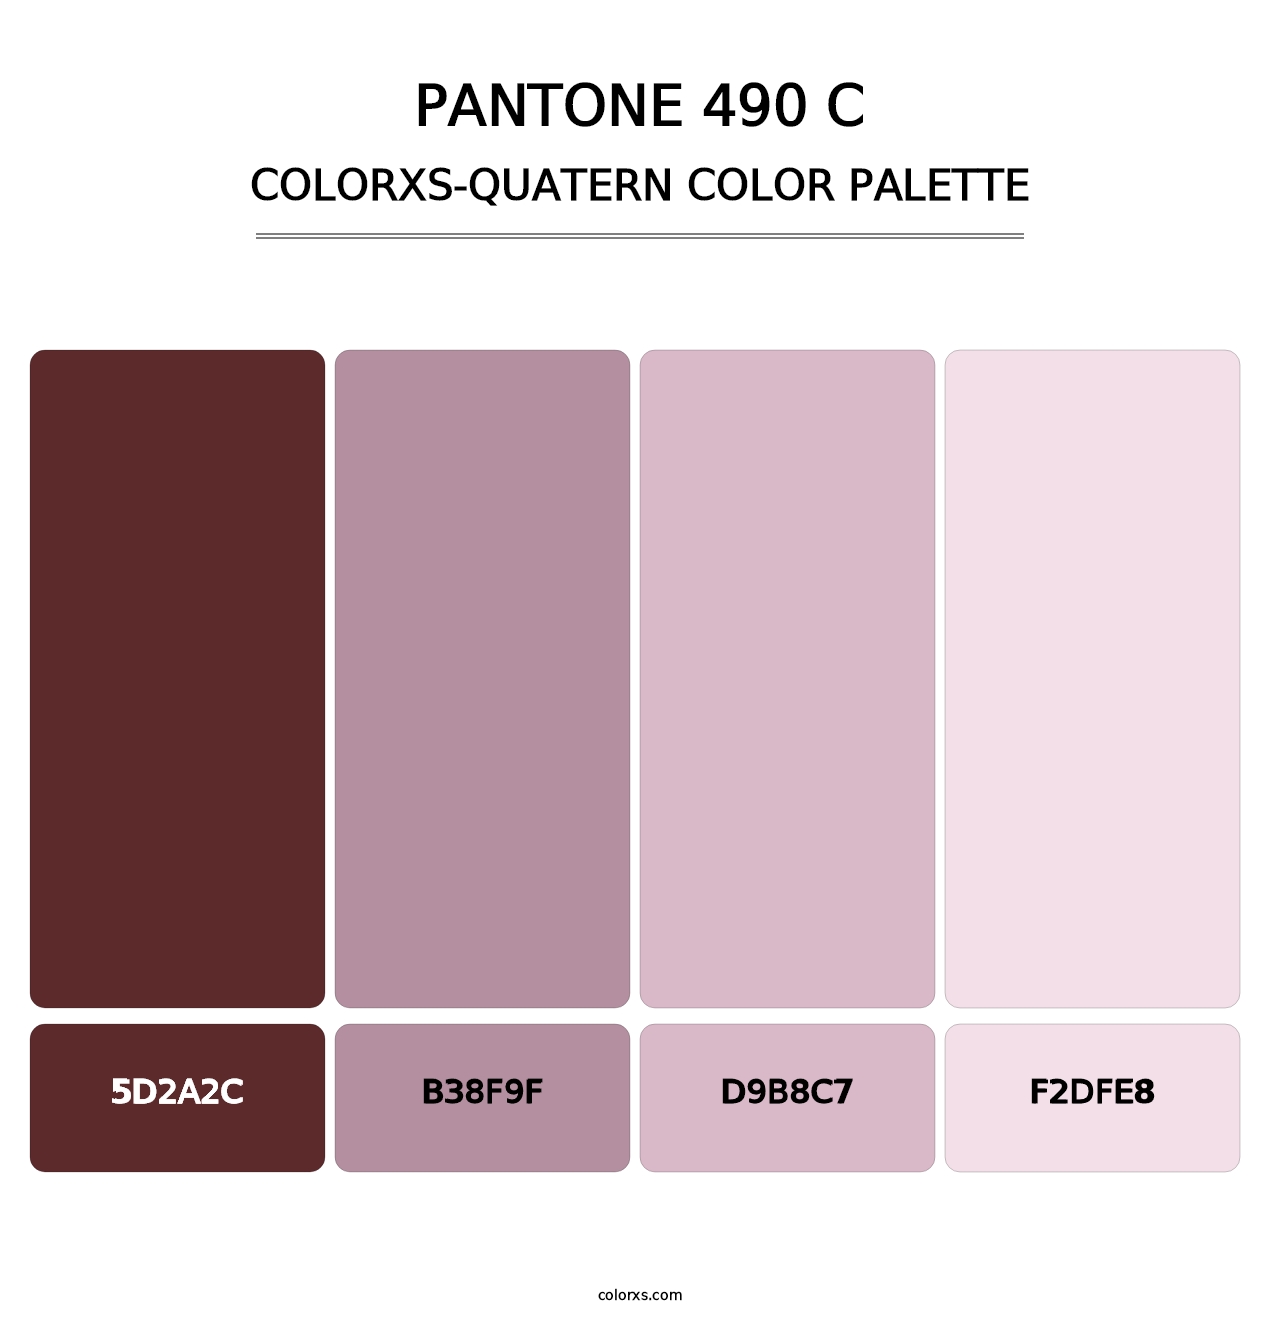 PANTONE 490 C - Colorxs Quatern Palette